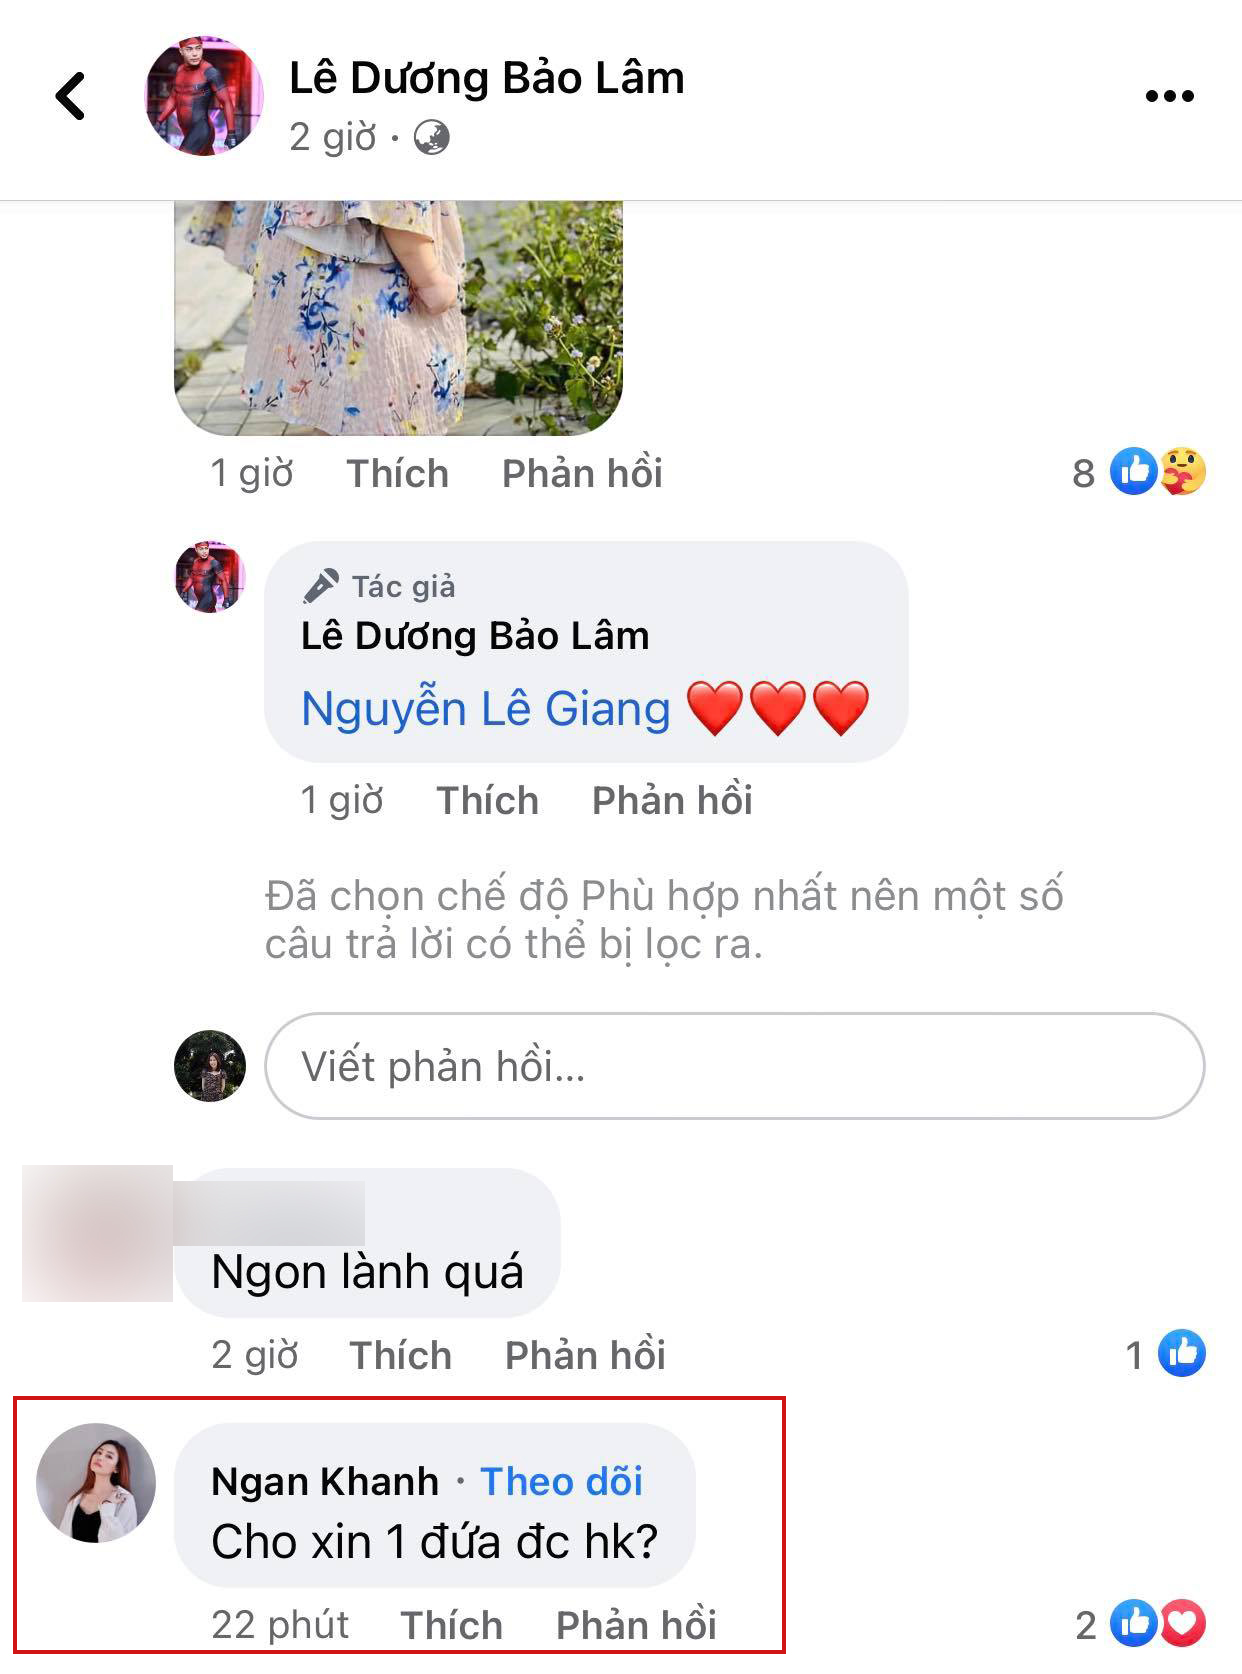 Diễn viên Ngân Khánh xin liền một bé của Lê Dương Bảo Lâm vì quá cưng